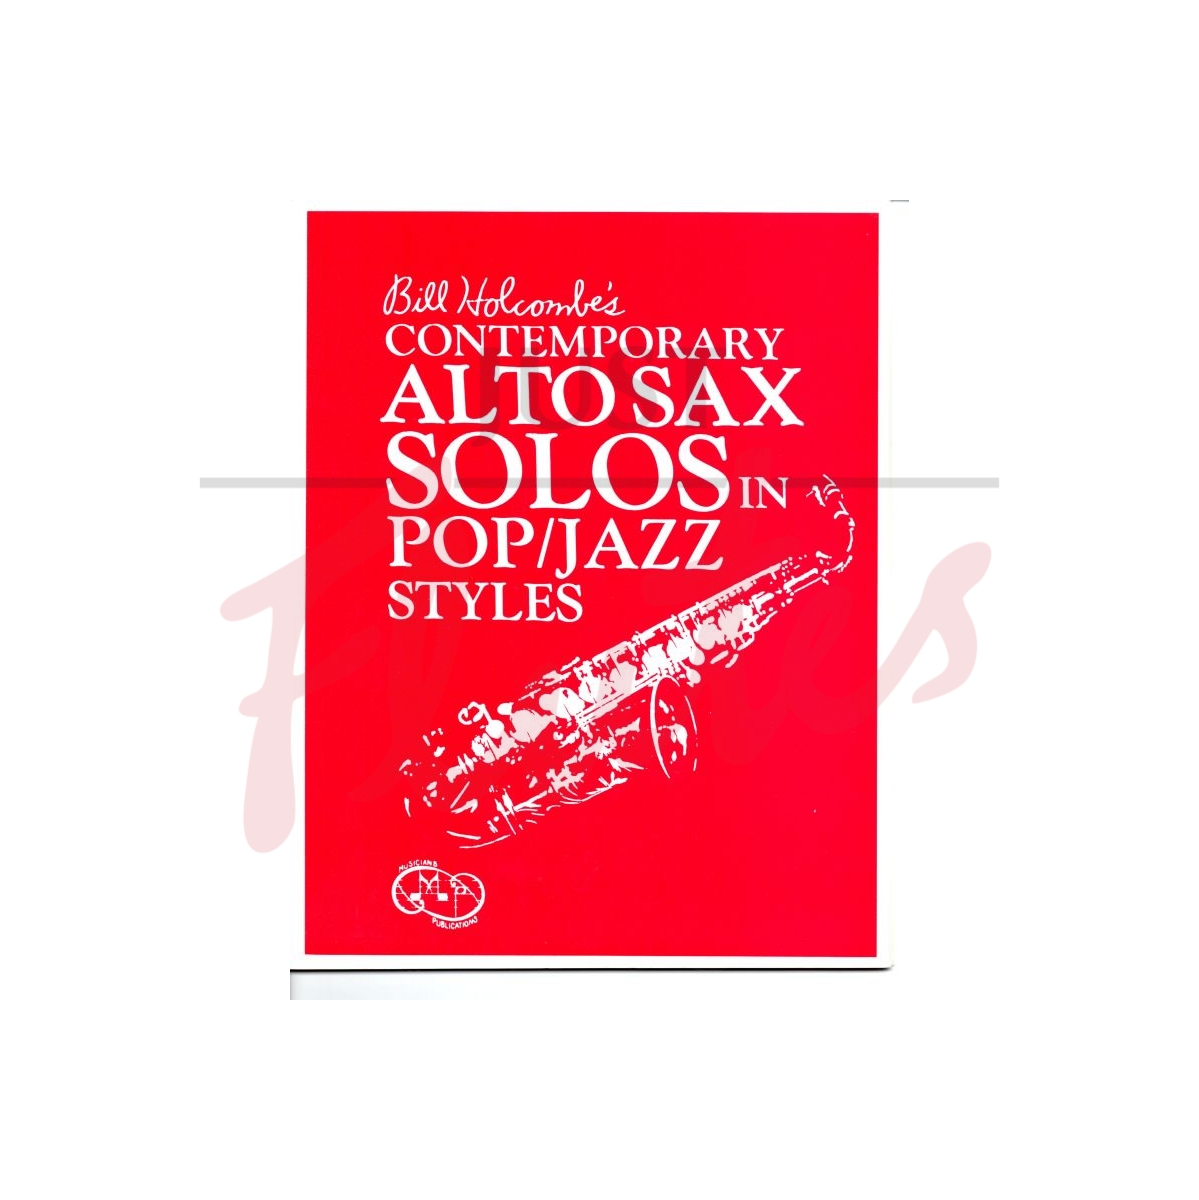 Contemporary Alto Sax Solos in Pop/Jazz Styles